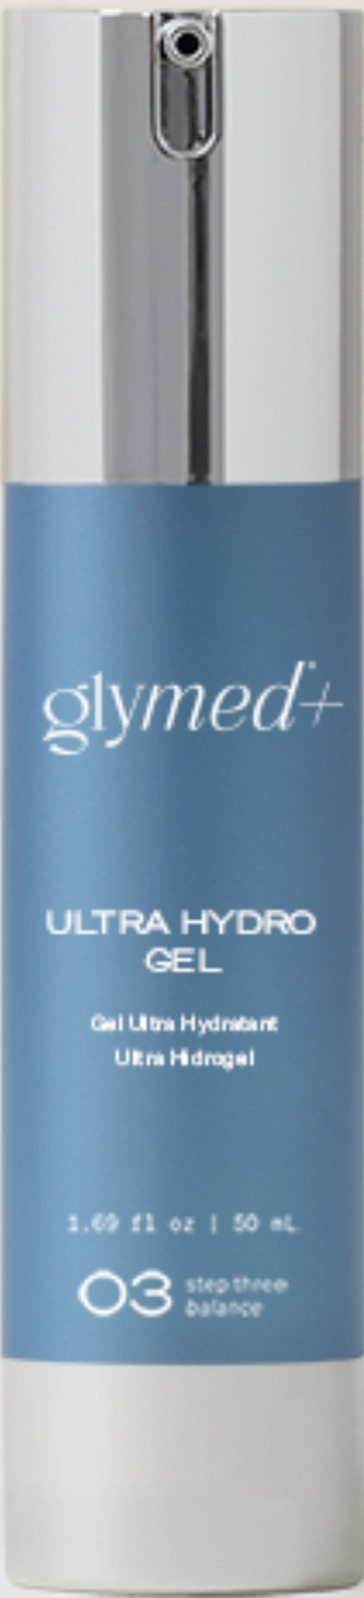 Glymed Plus Ultra Hydro Gel